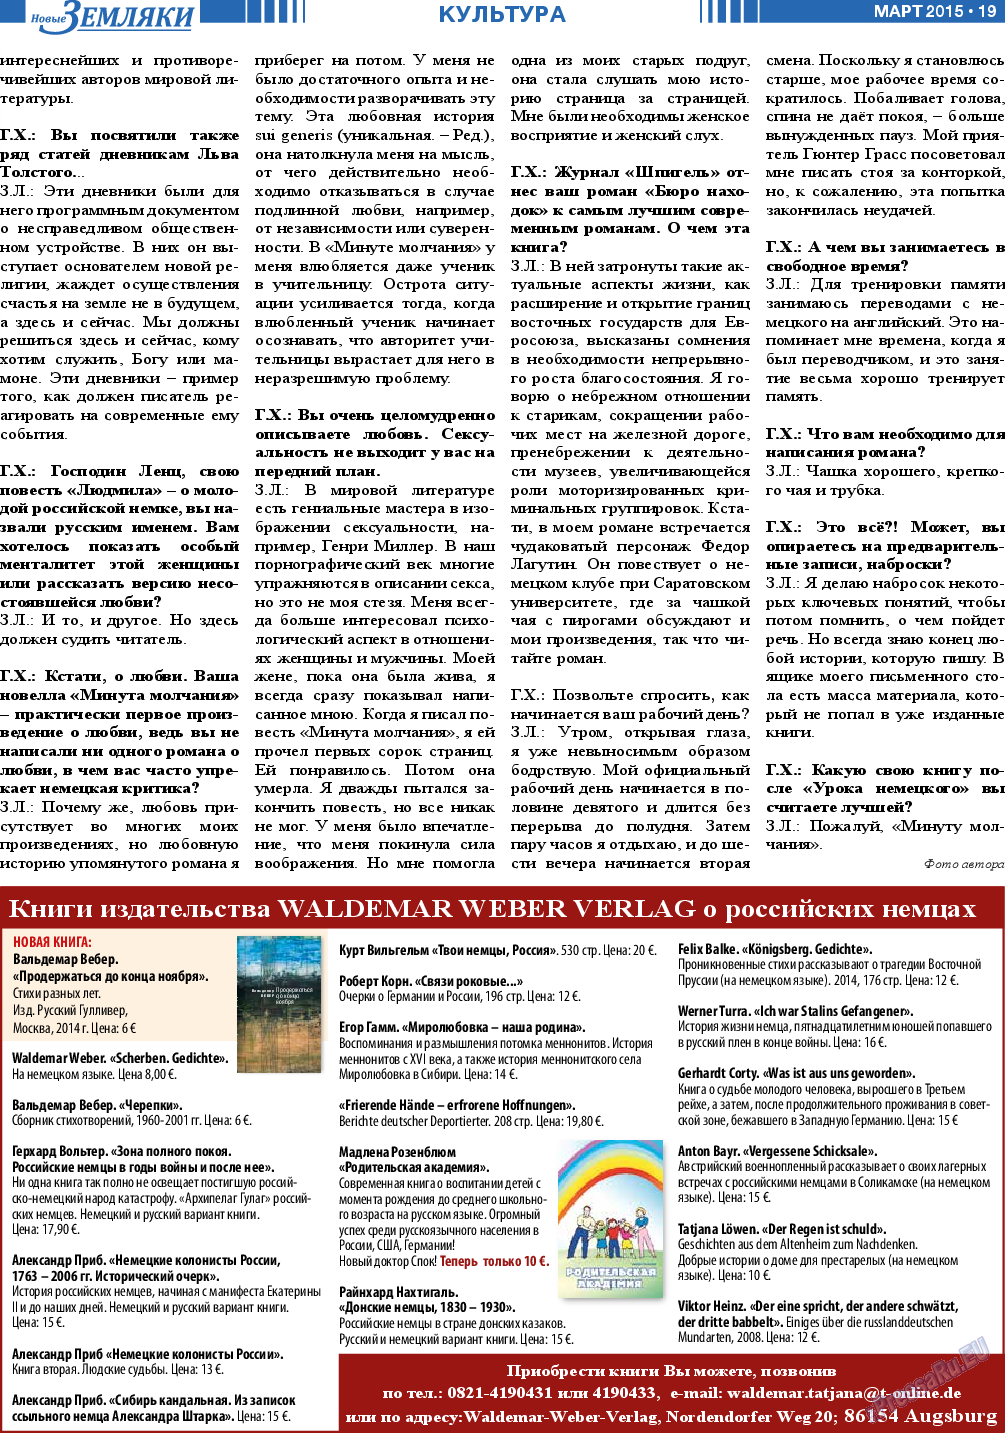 Новые Земляки, газета. 2015 №3 стр.19